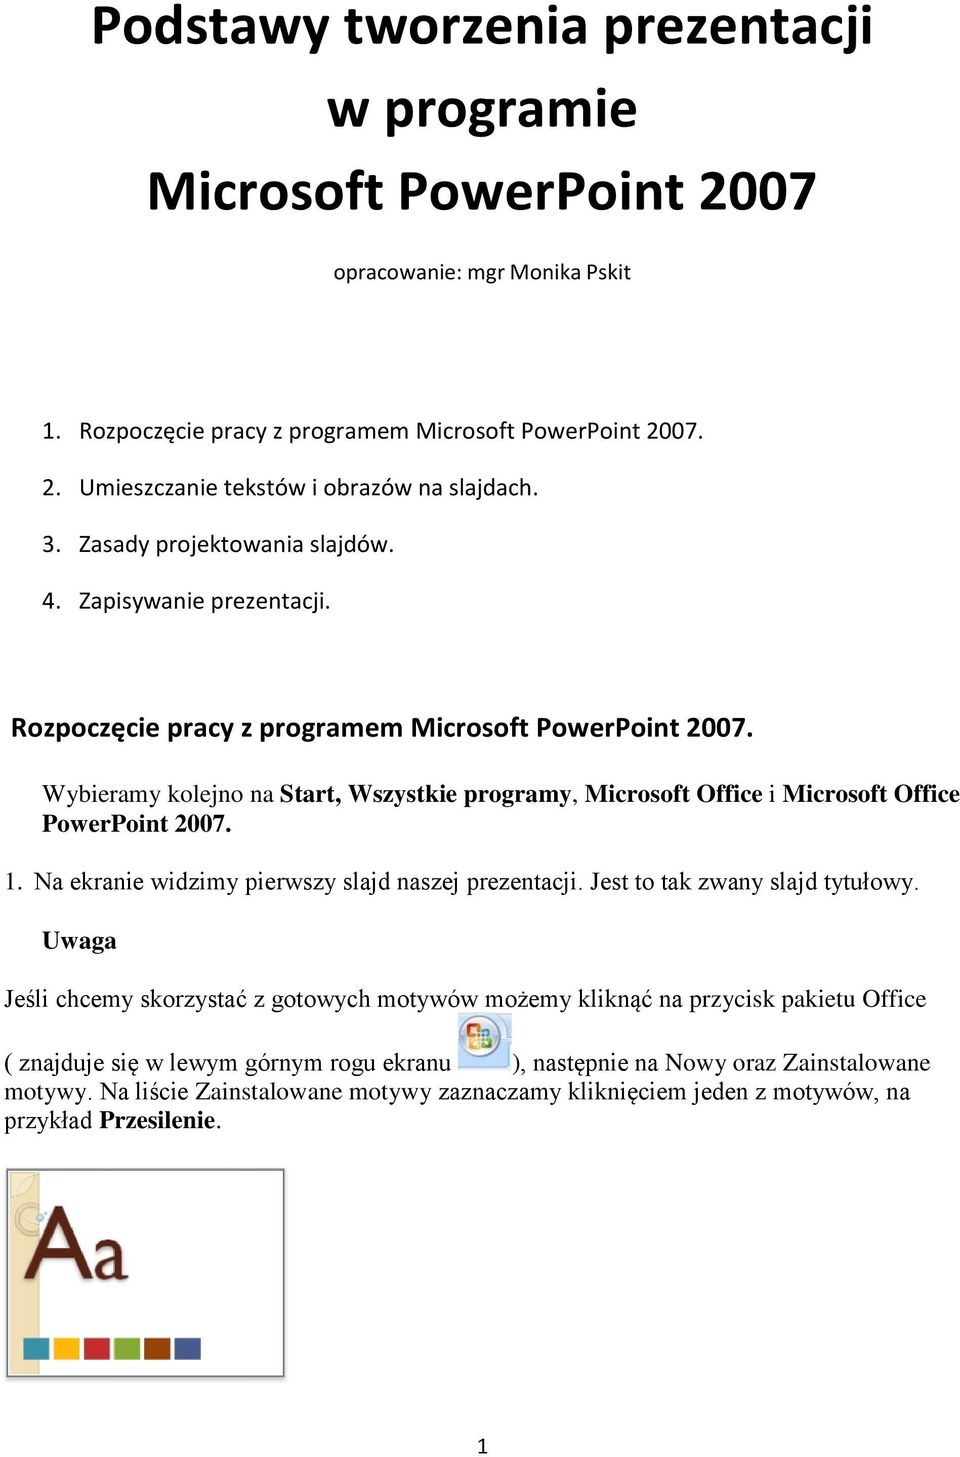 Wybieramy kolejno na Start, Wszystkie programy, Microsoft Office i Microsoft Office PowerPoint 2007. 1. Na ekranie widzimy pierwszy slajd naszej prezentacji. Jest to tak zwany slajd tytułowy.